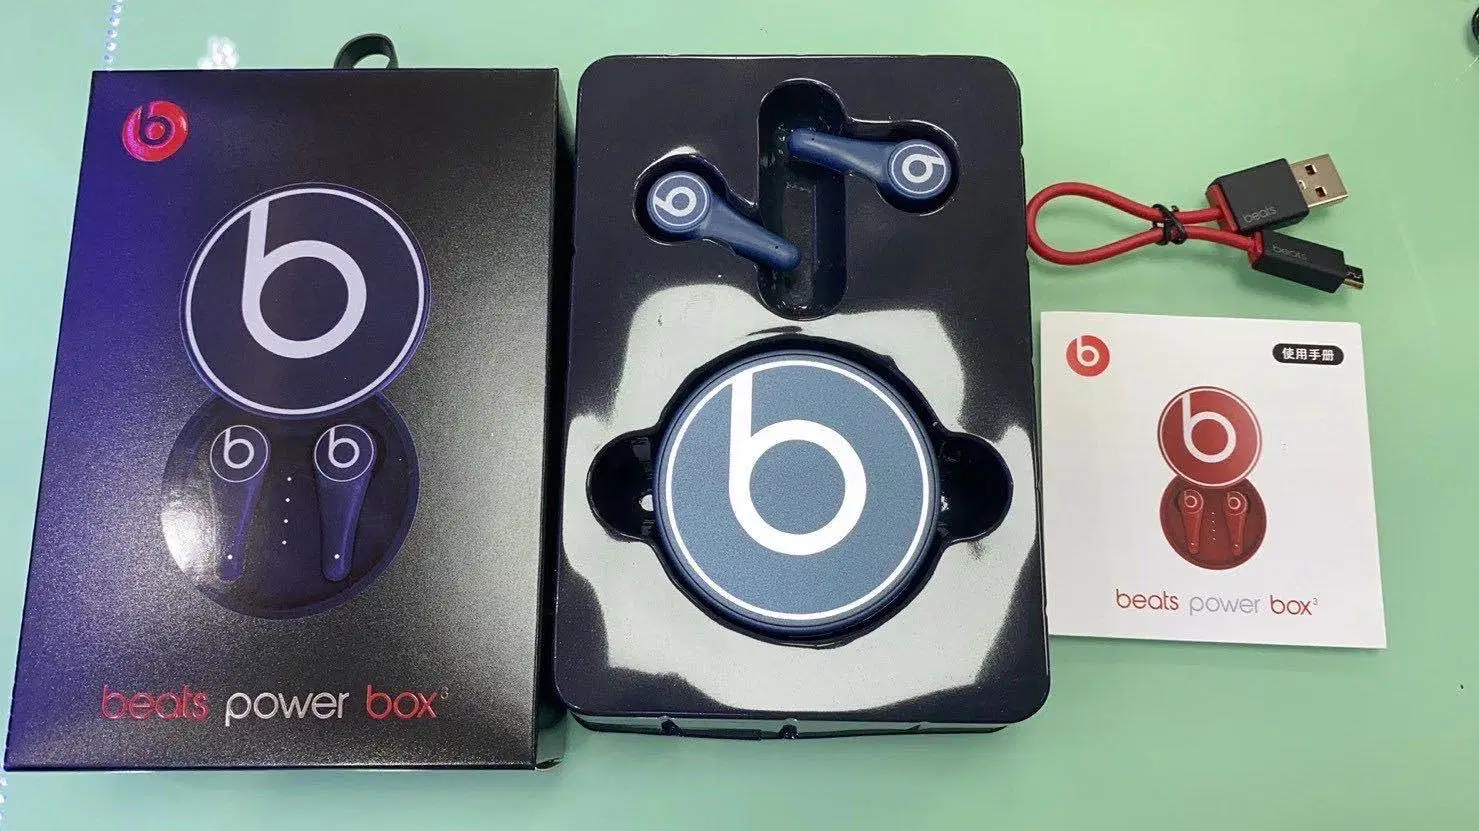 Mobiltelefon Tws True Wireless Stereo Sound Bluetooth Beats Headset Kopfhörer Ohrhörer Ohrhörer für Power Box Weihnachtsgeschenk